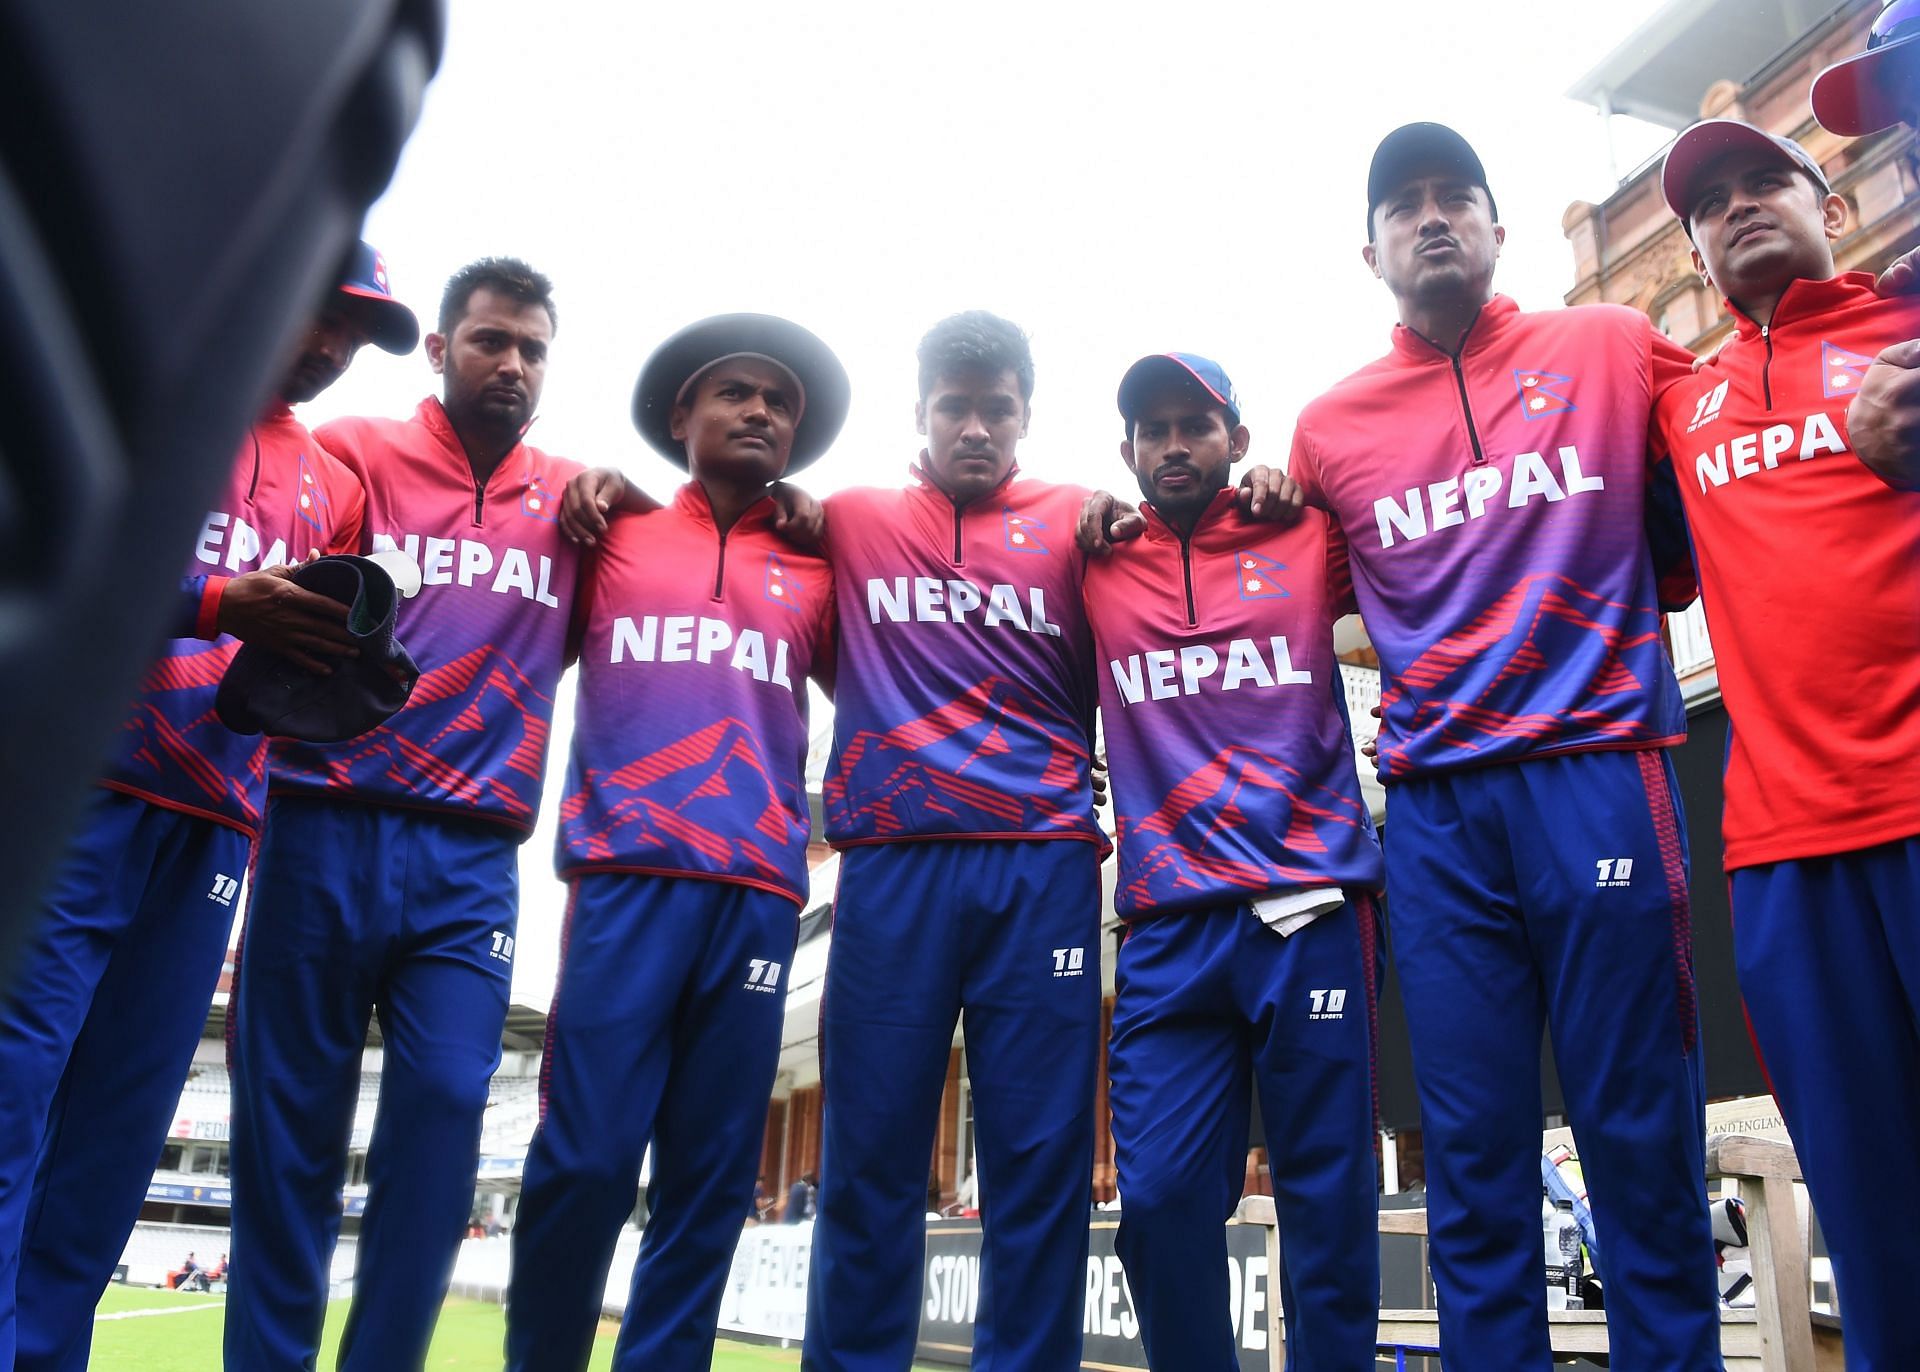 नेपाल की टीम प्रदर्शन के लिहाज से संघर्ष कर रही है